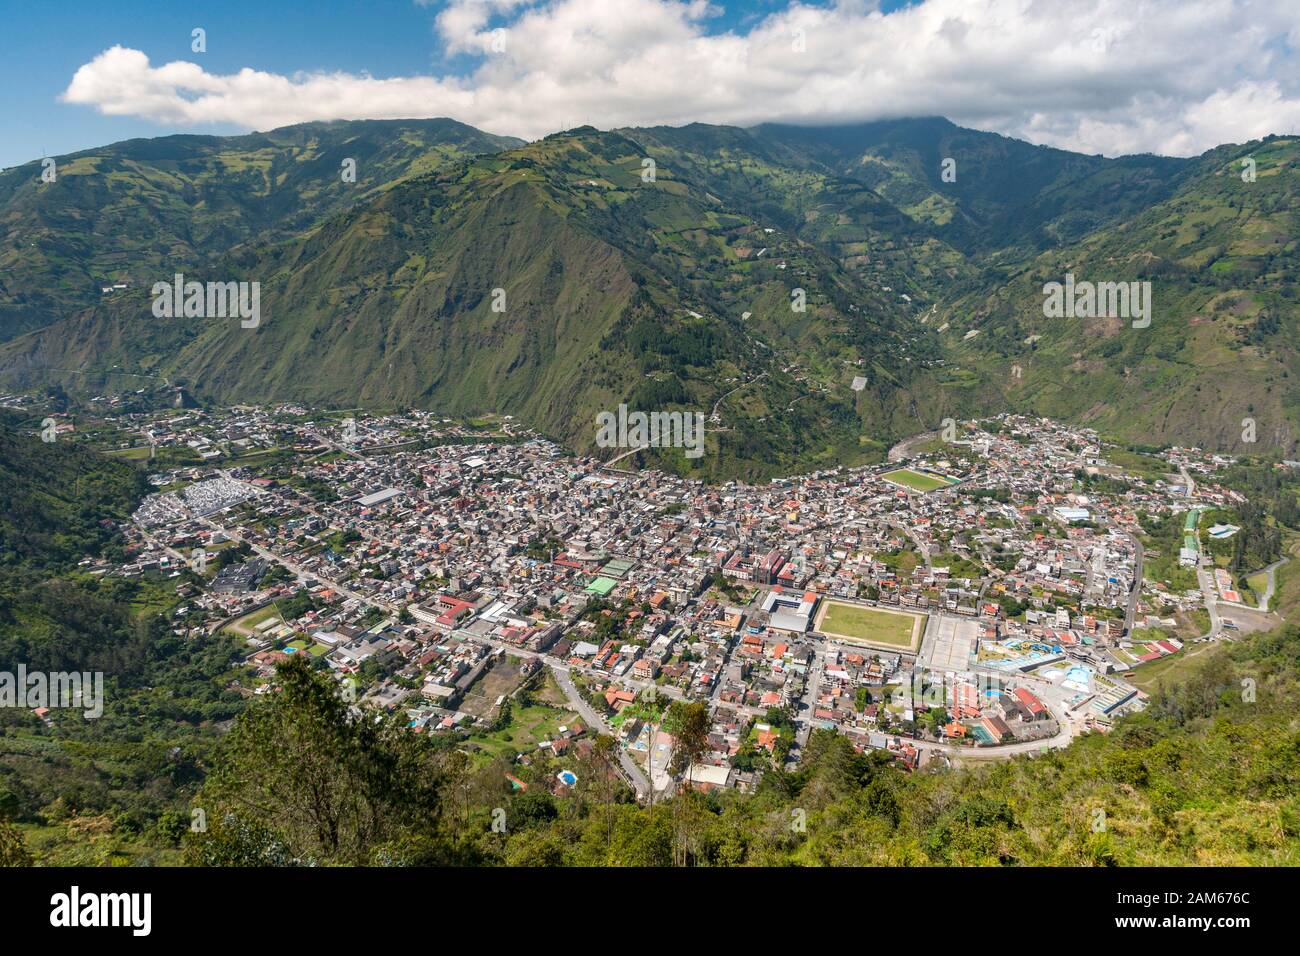 View of the town of Baños de Agua Santa in Ecuador. Stock Photo